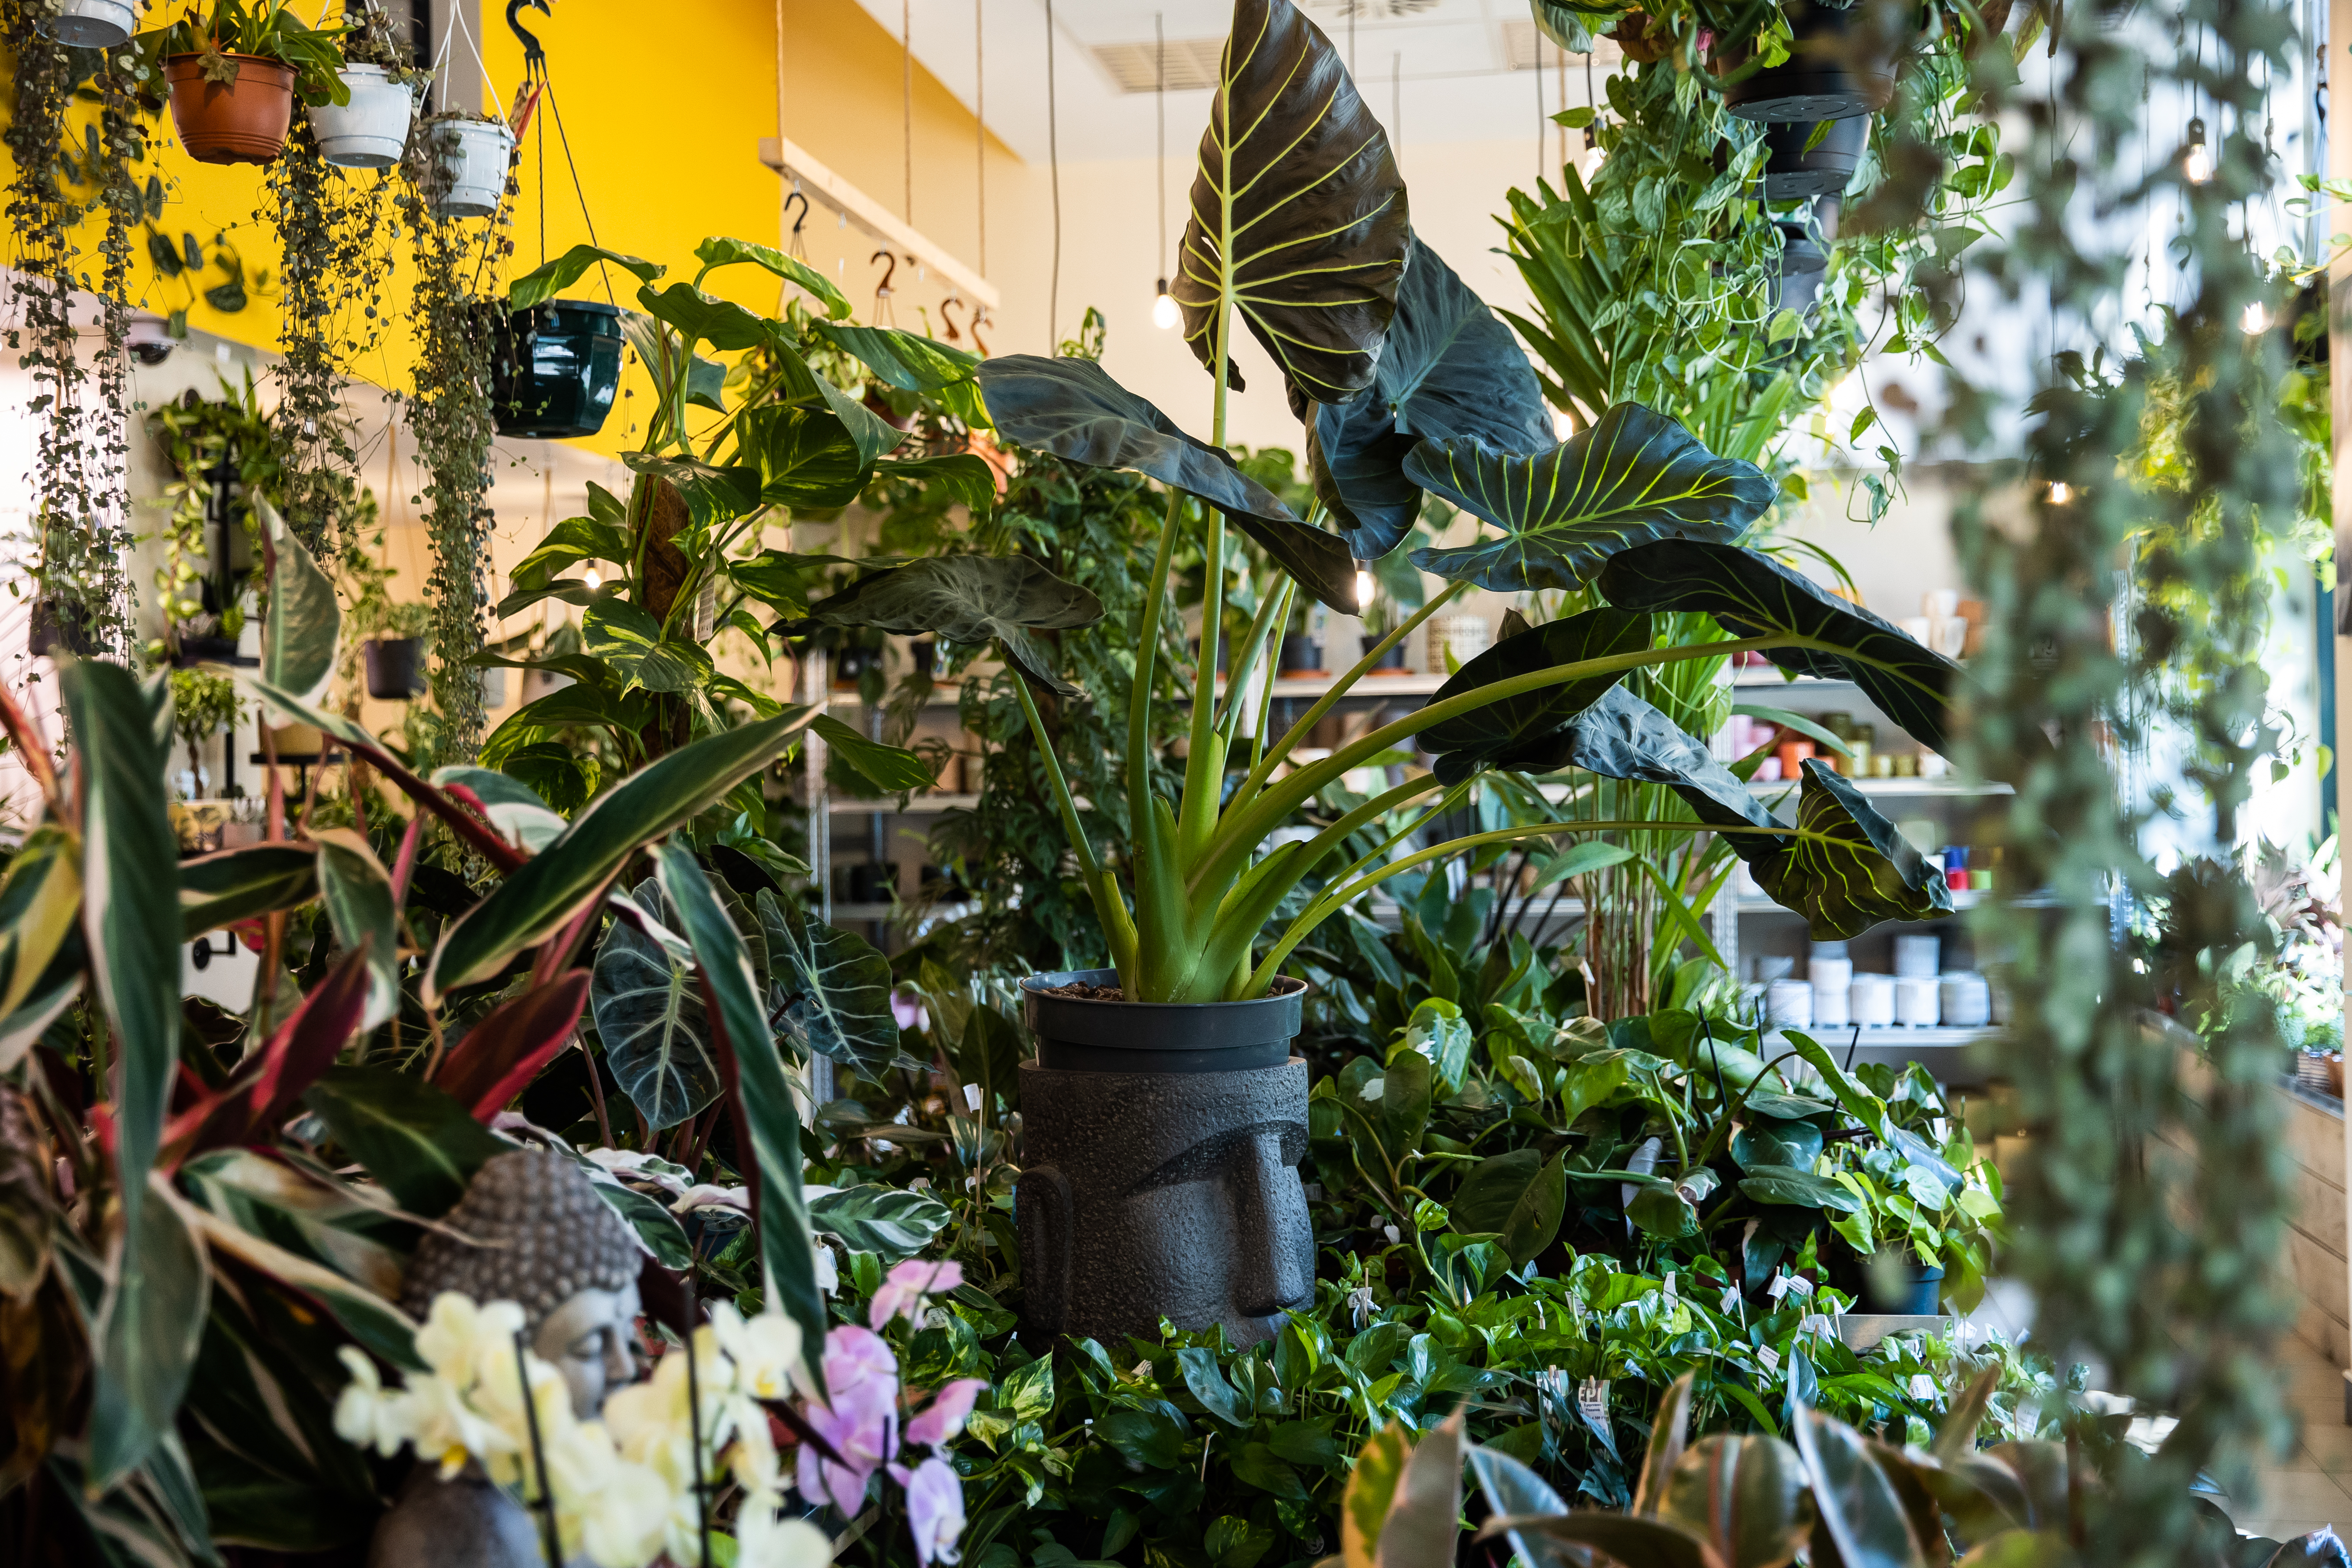 Virágok jó áron és dzsungelhangulat Budapest legnagyobb szobanövényüzletében – A Moai Jungle-ben jártunk